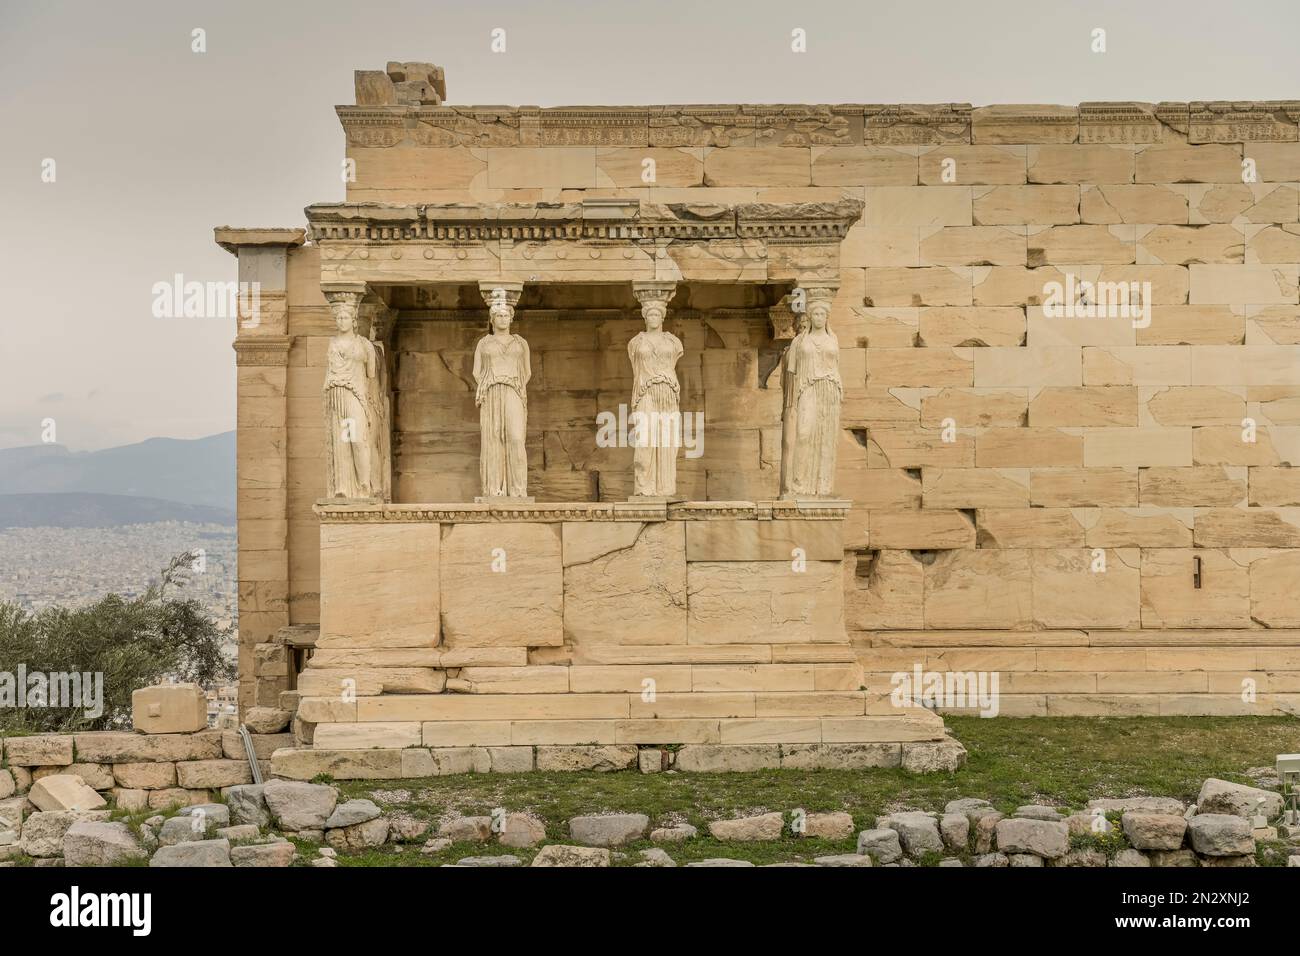 Säulenfiguren der Karyatiden am Erechtheion Tempel, Akropolis, Athen, Griechenland Foto Stock